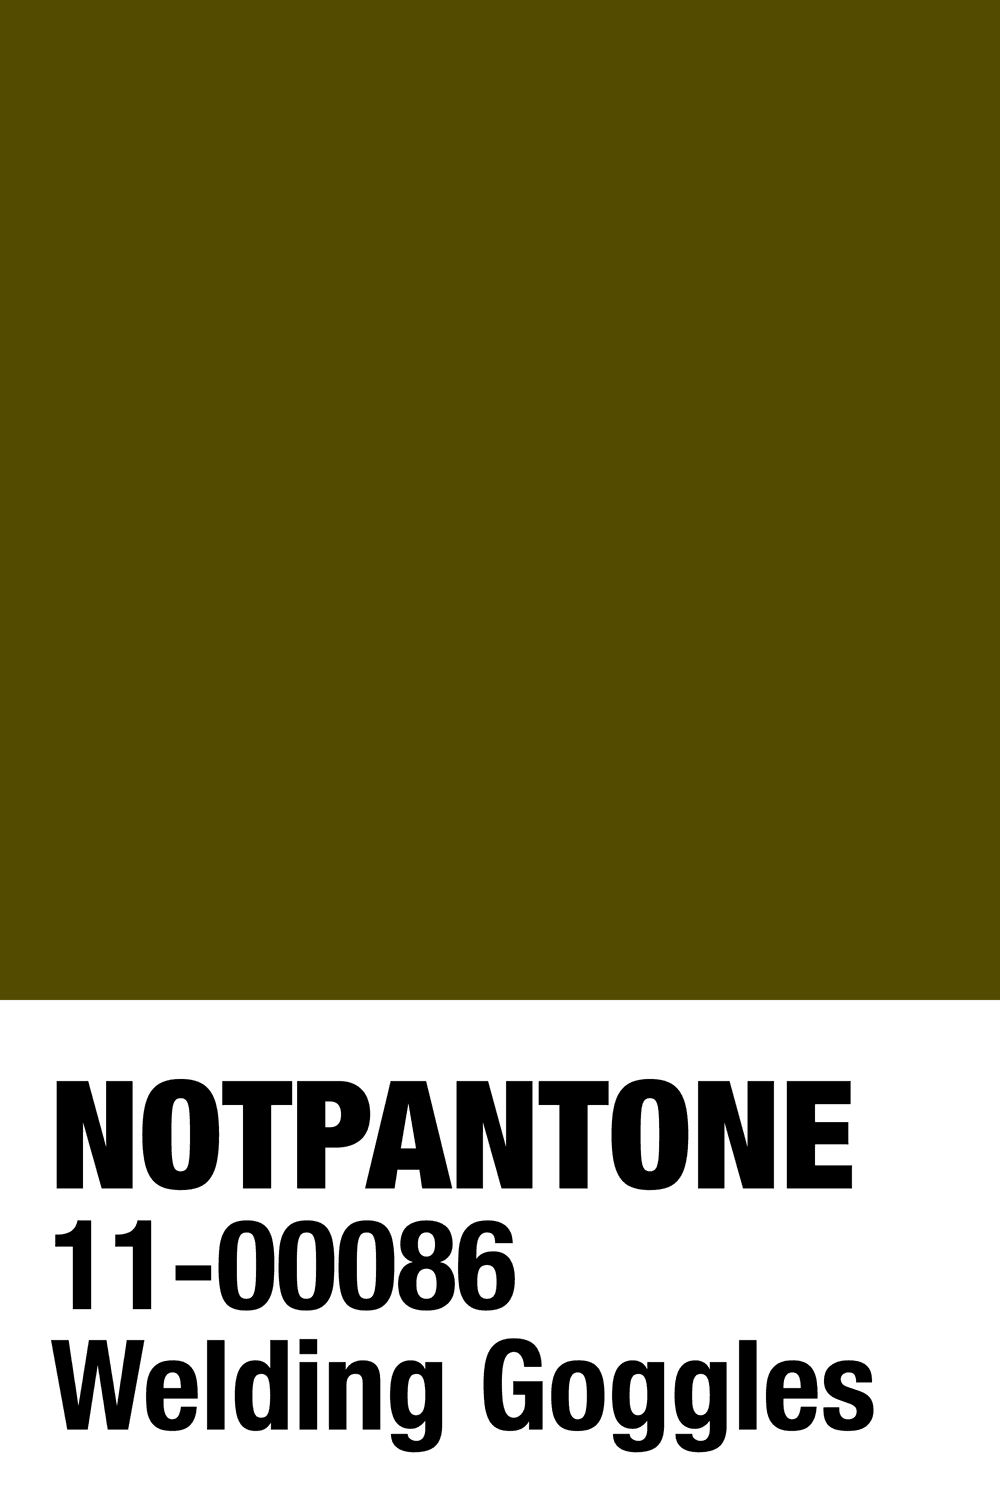 NOTPANTONE - Welding Goggles